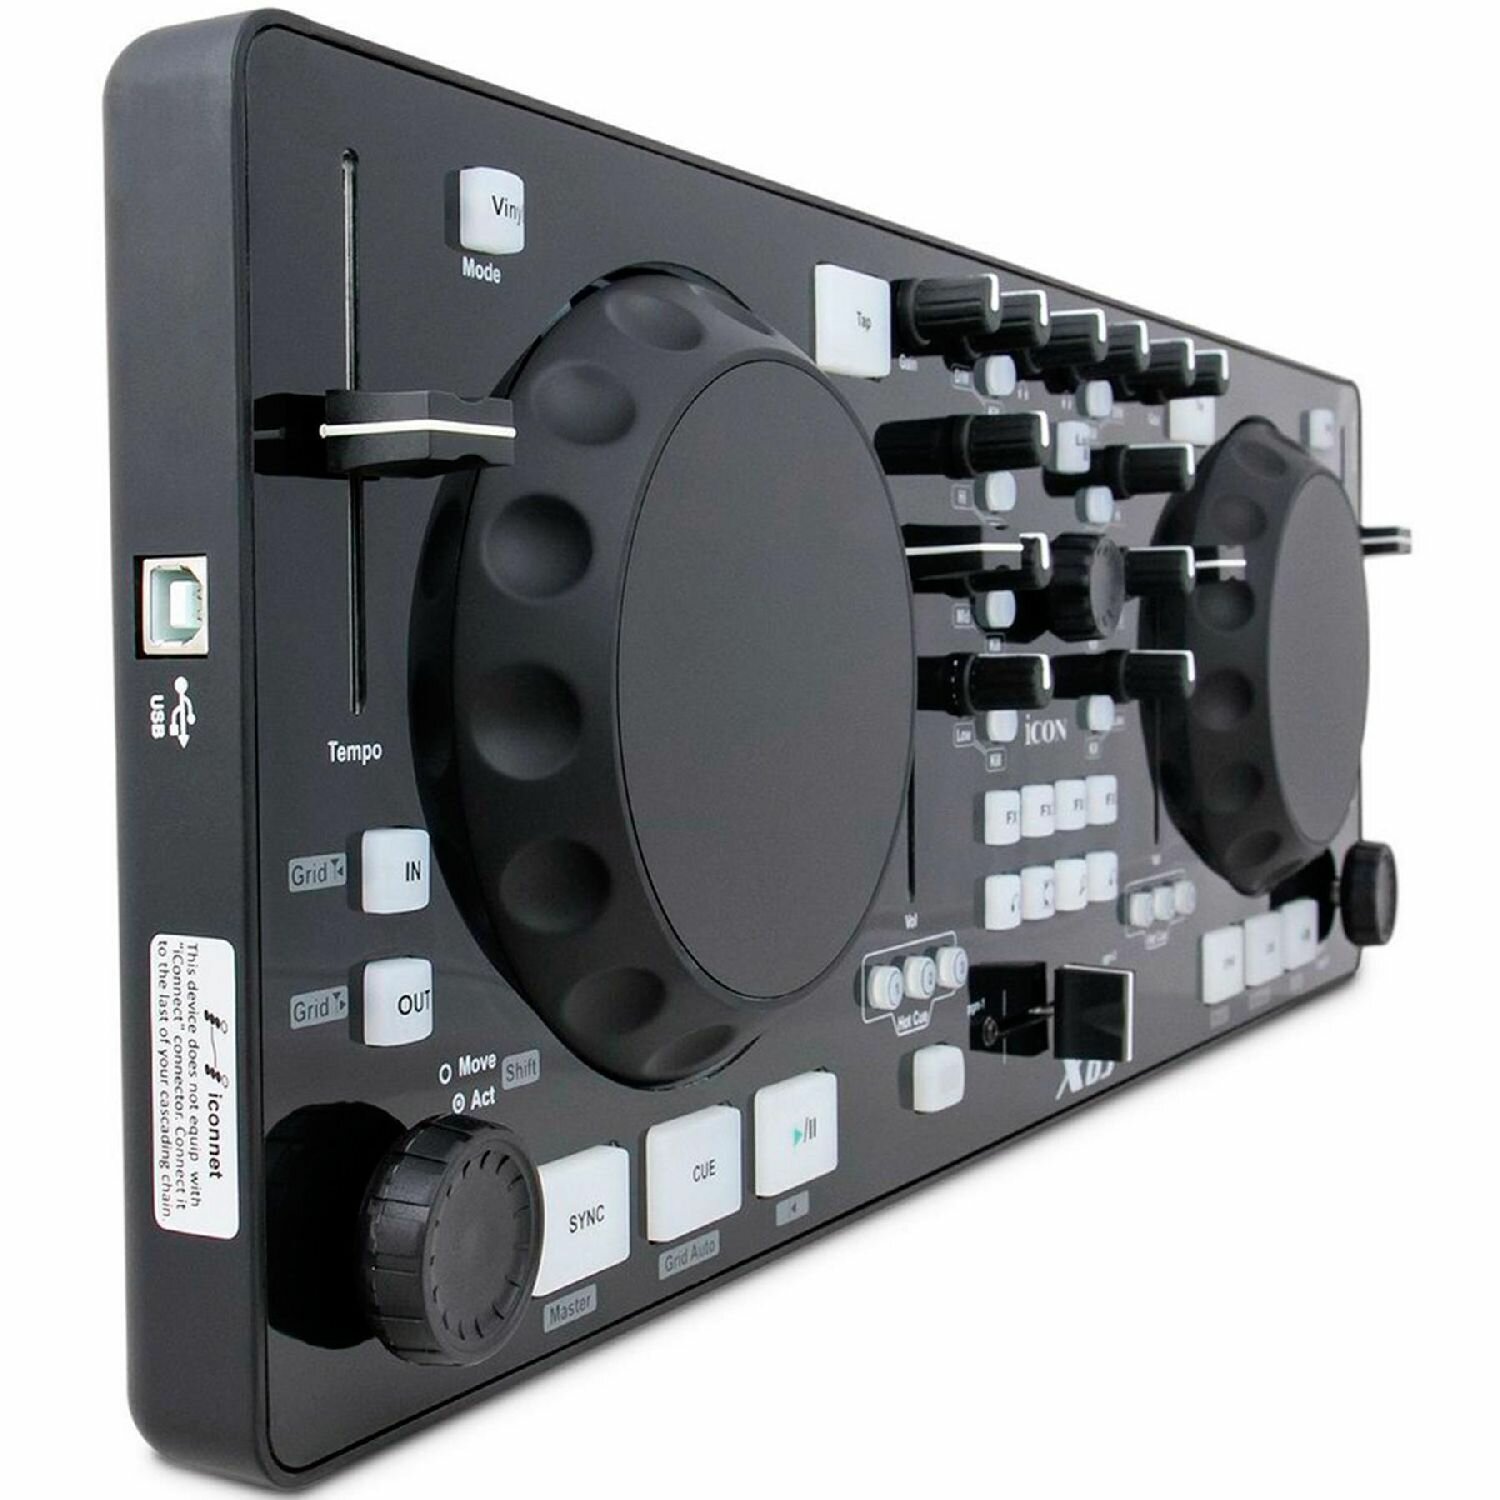 Портативный MIDI DJ контроллер iCON XDJ